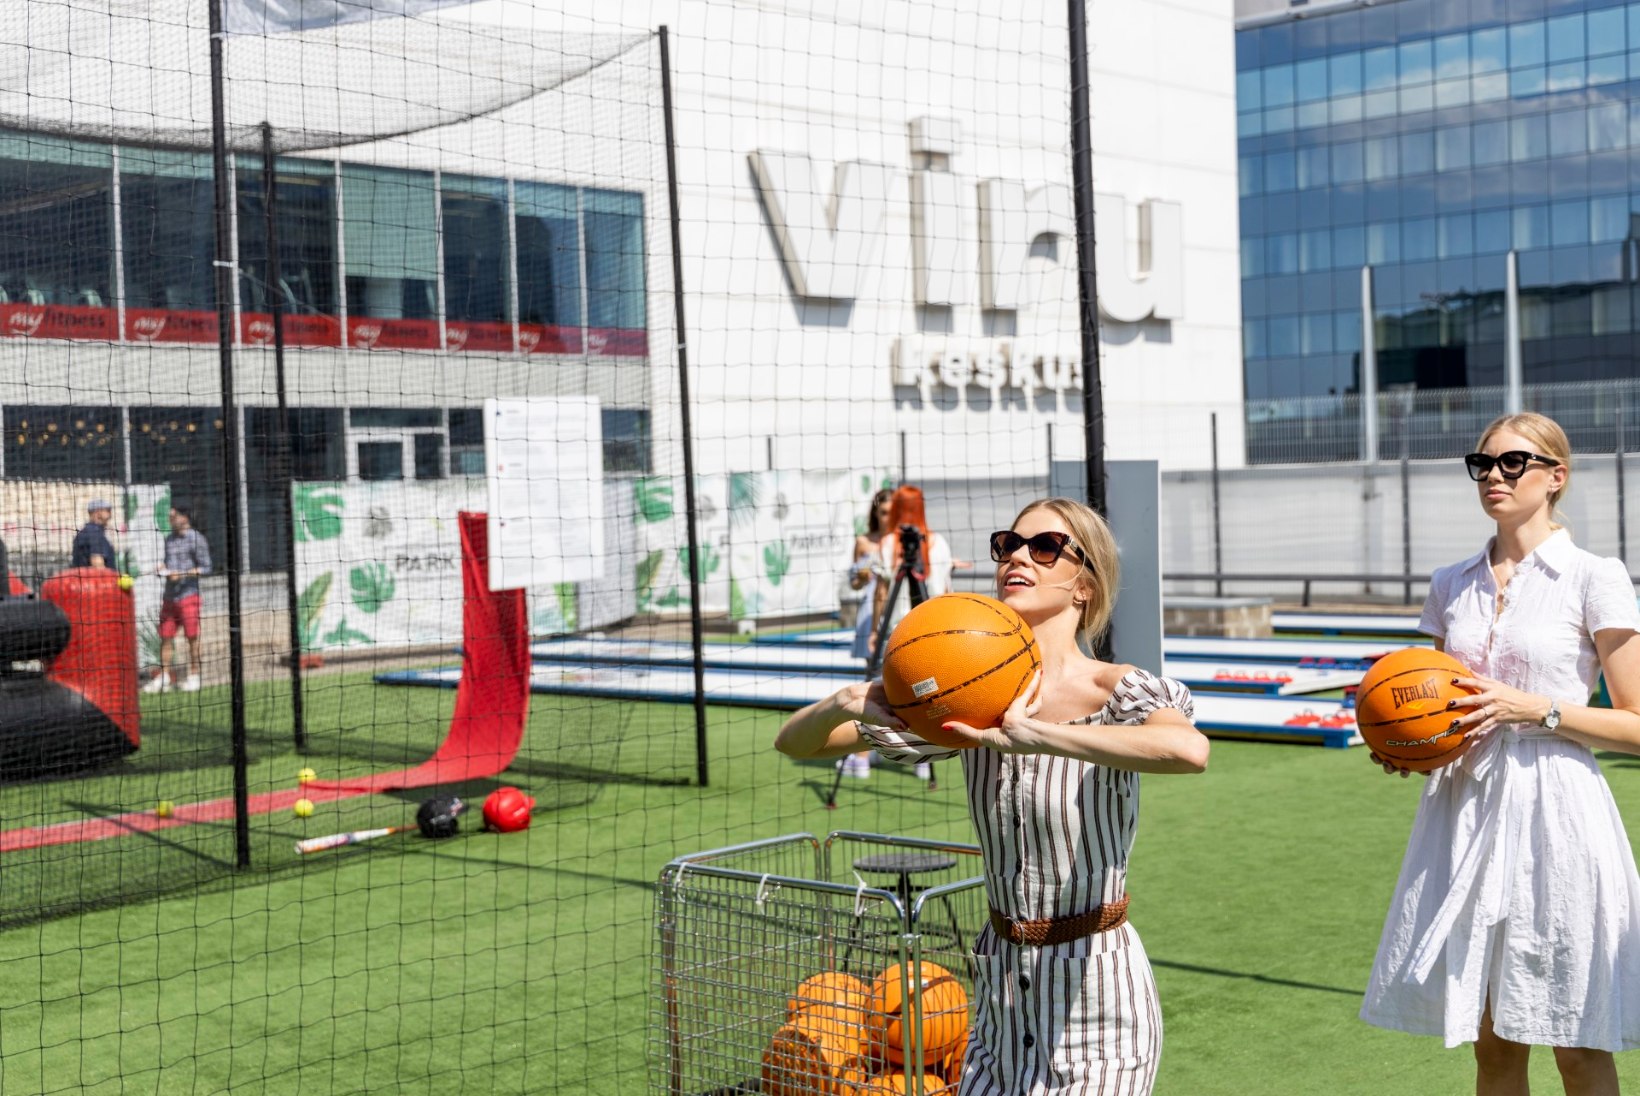 GALERII | Viru keskuse katuseterrassi avamist tähistati sportlike mängude ja särtsaka moeetendusega